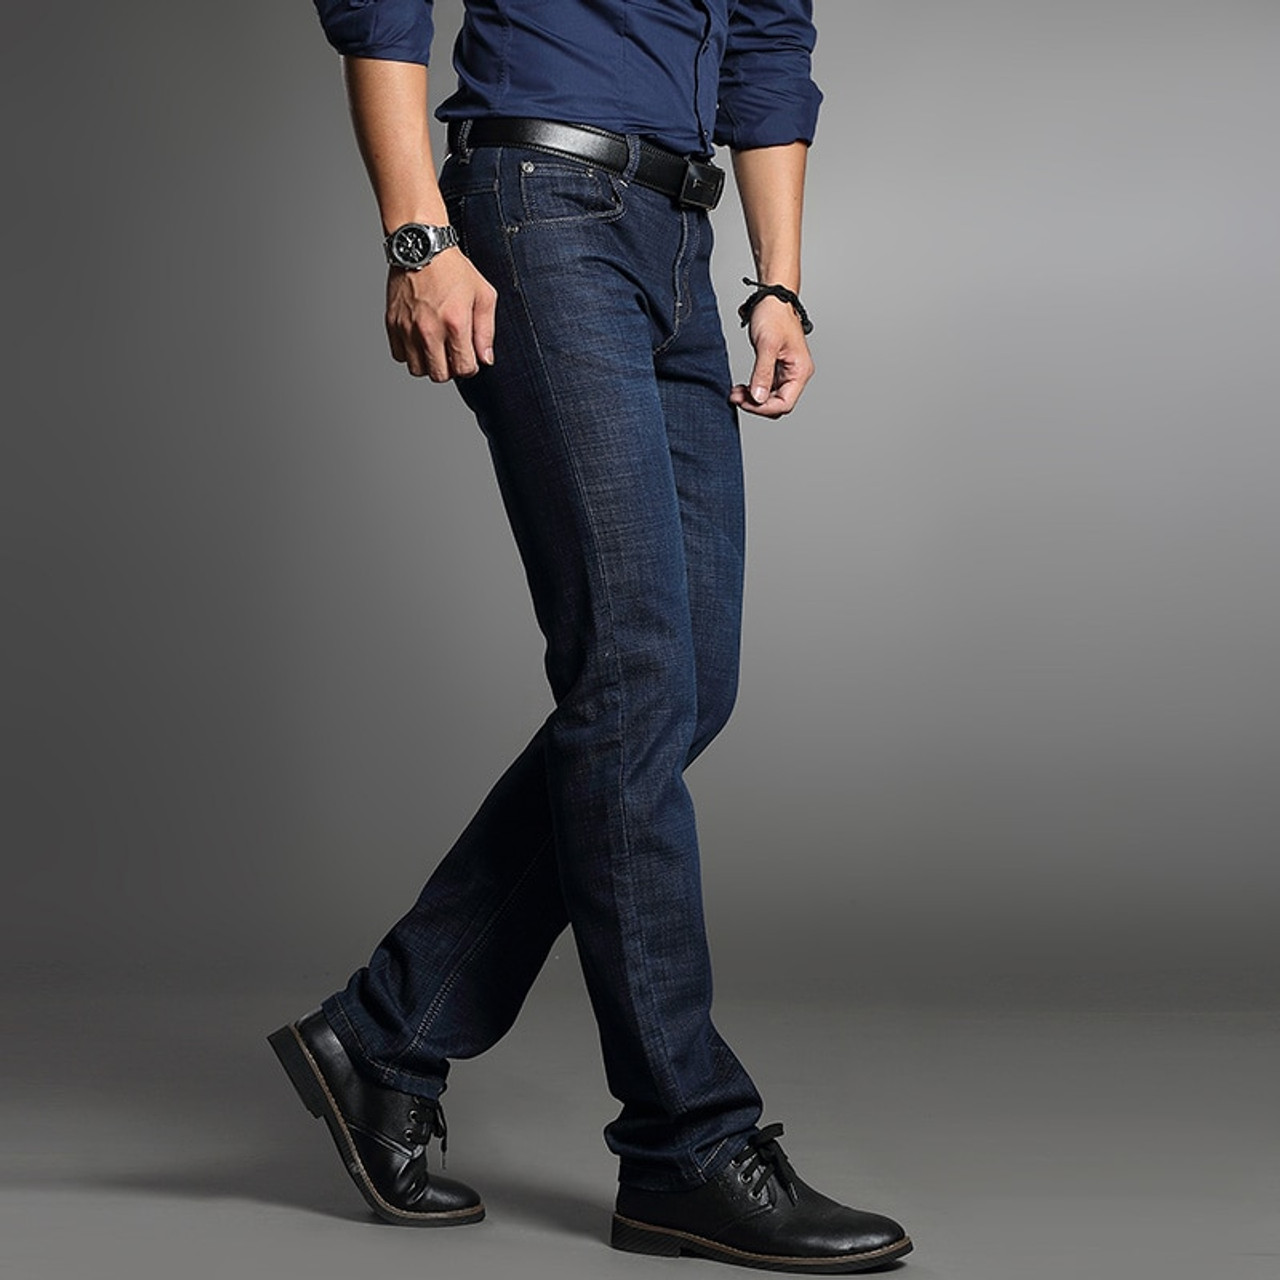 Drizzte Men's Jeans Blue Denim Business Stragiht Silm Fit Jeans Size 30 32 34 35 36 38 Pants Jean for Men -